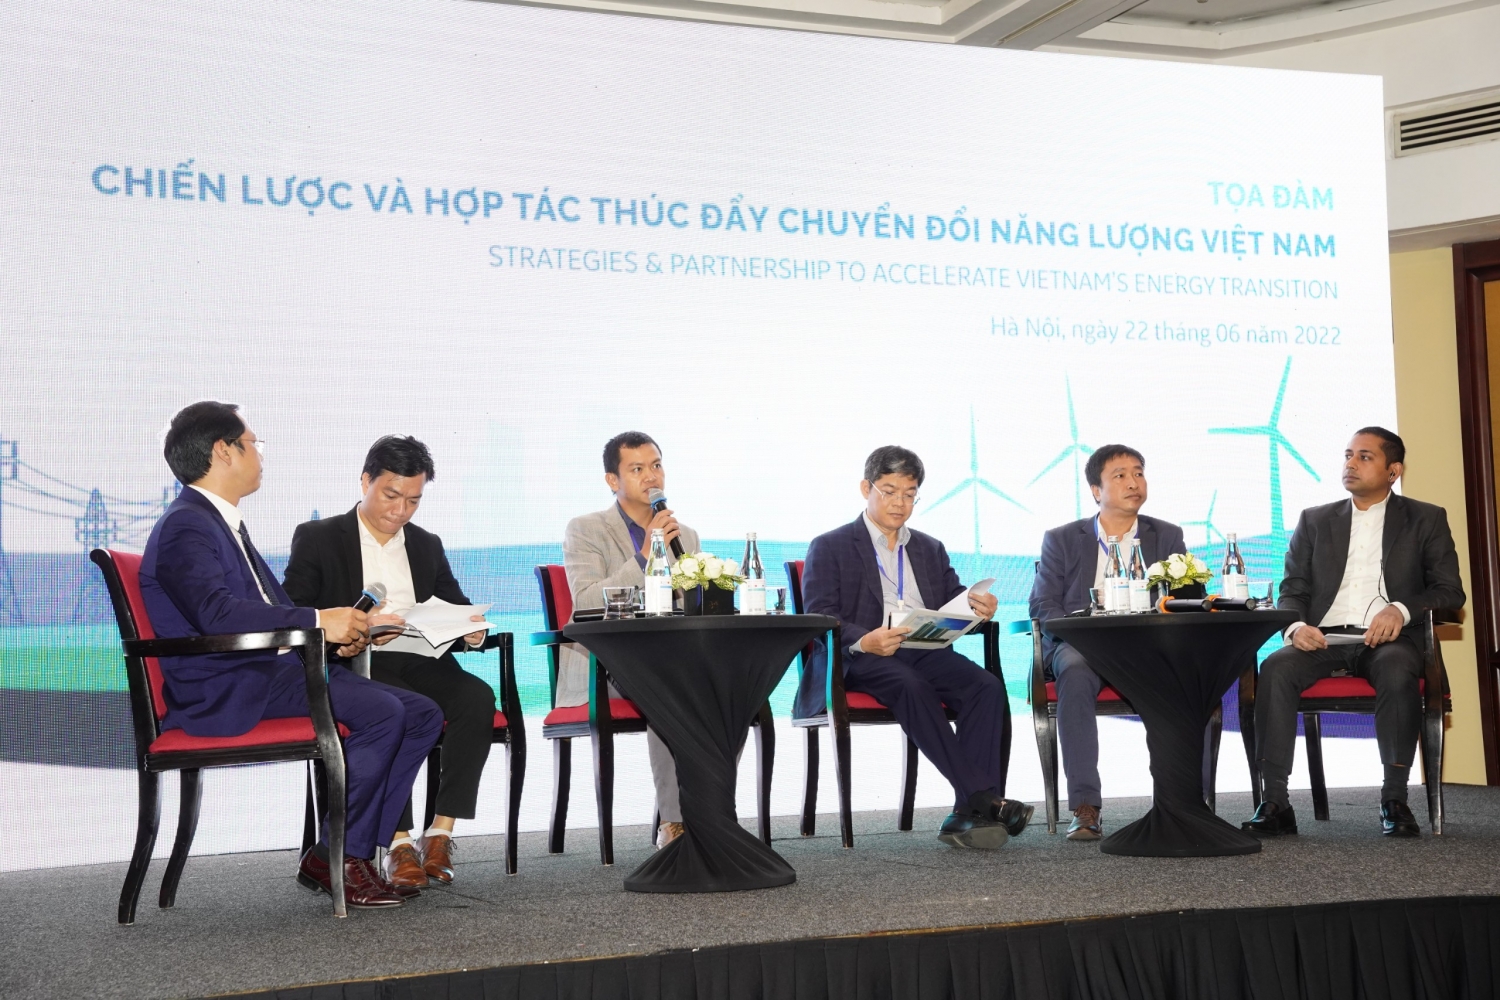 Chiến lược và hợp tác thúc đẩy chuyển đổi năng lượng tại Việt Nam